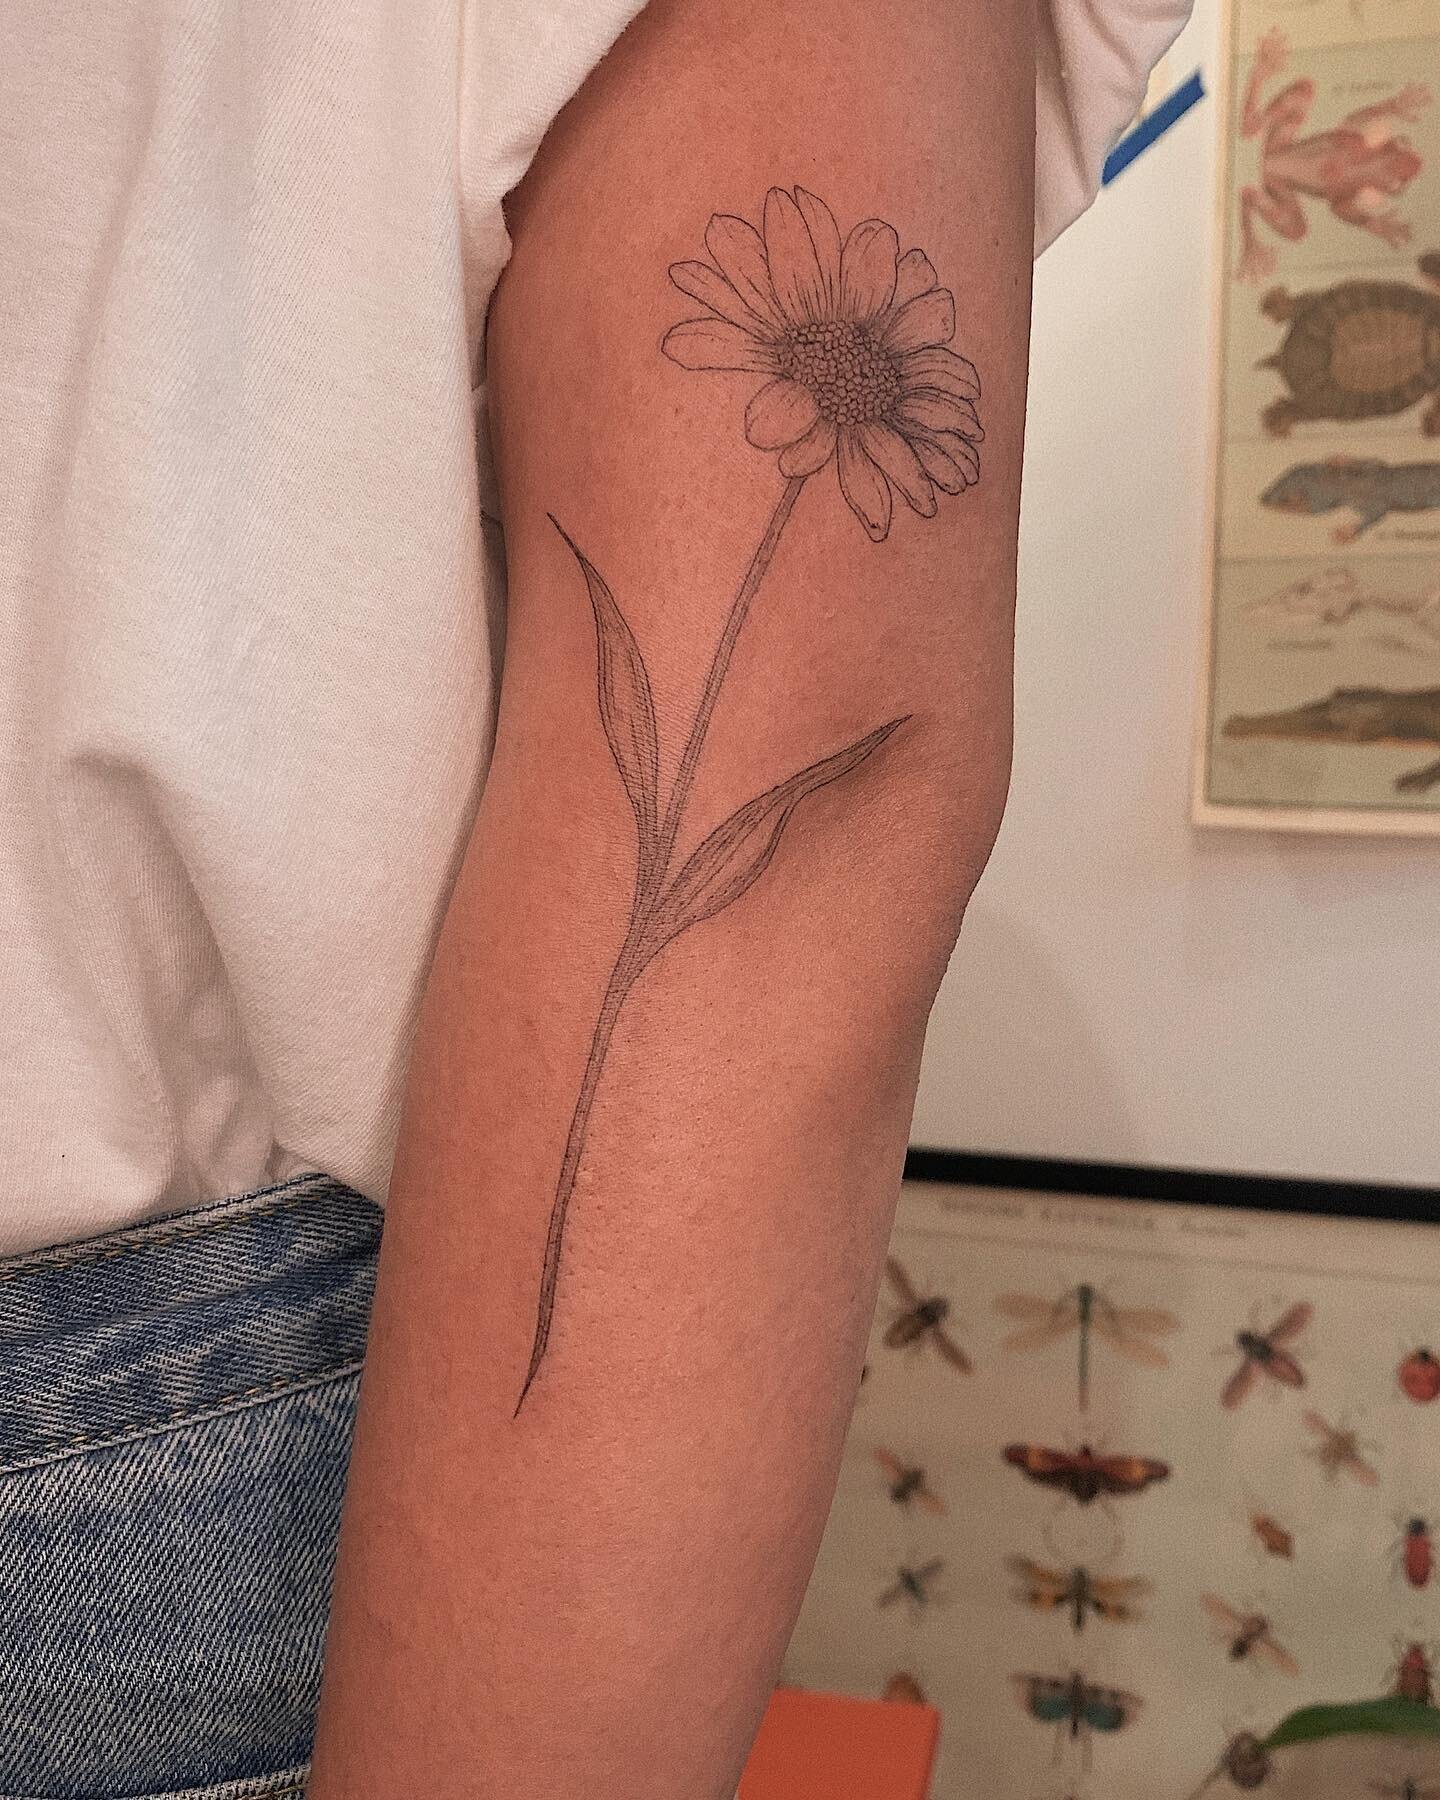 Margarida articulada na Fabi &hearts;️ obrigada pela constru&ccedil;&atilde;o desse movimento e do carinho comigo &amp; meu trabalho!
.
.
.
#daisy #daisytattoo #margarida #tatuagem #tattoosp #tatuagemdelicada #tattooing #flowertattoo #delicatetattoo 